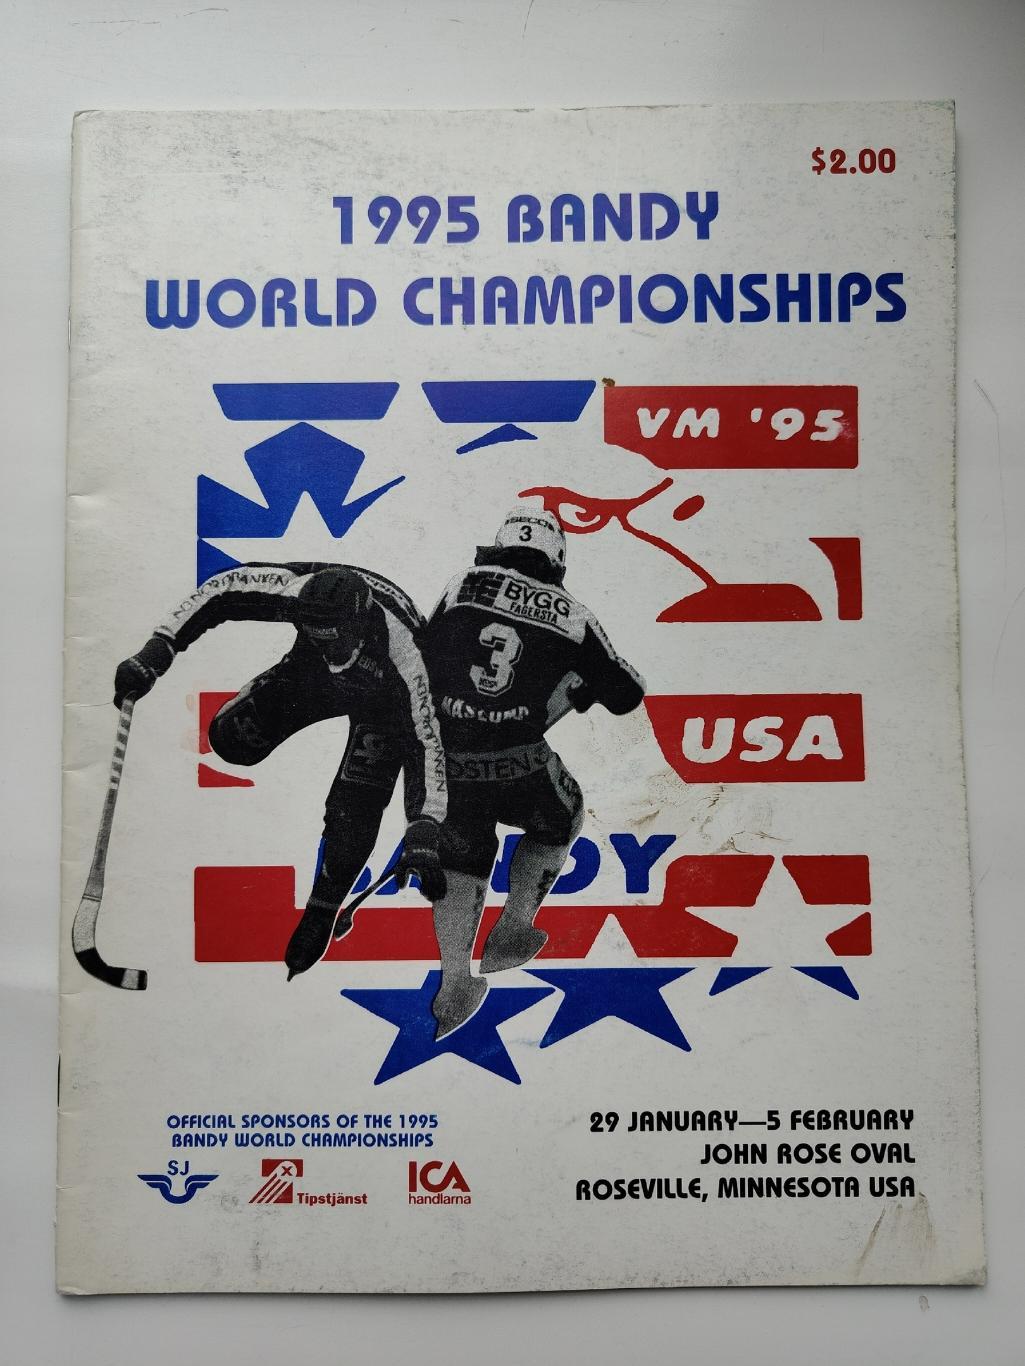 Хоккей с мячом Чемпионат Мира Розвилл США 1995 Россия Финляндия Швеция Казахстан